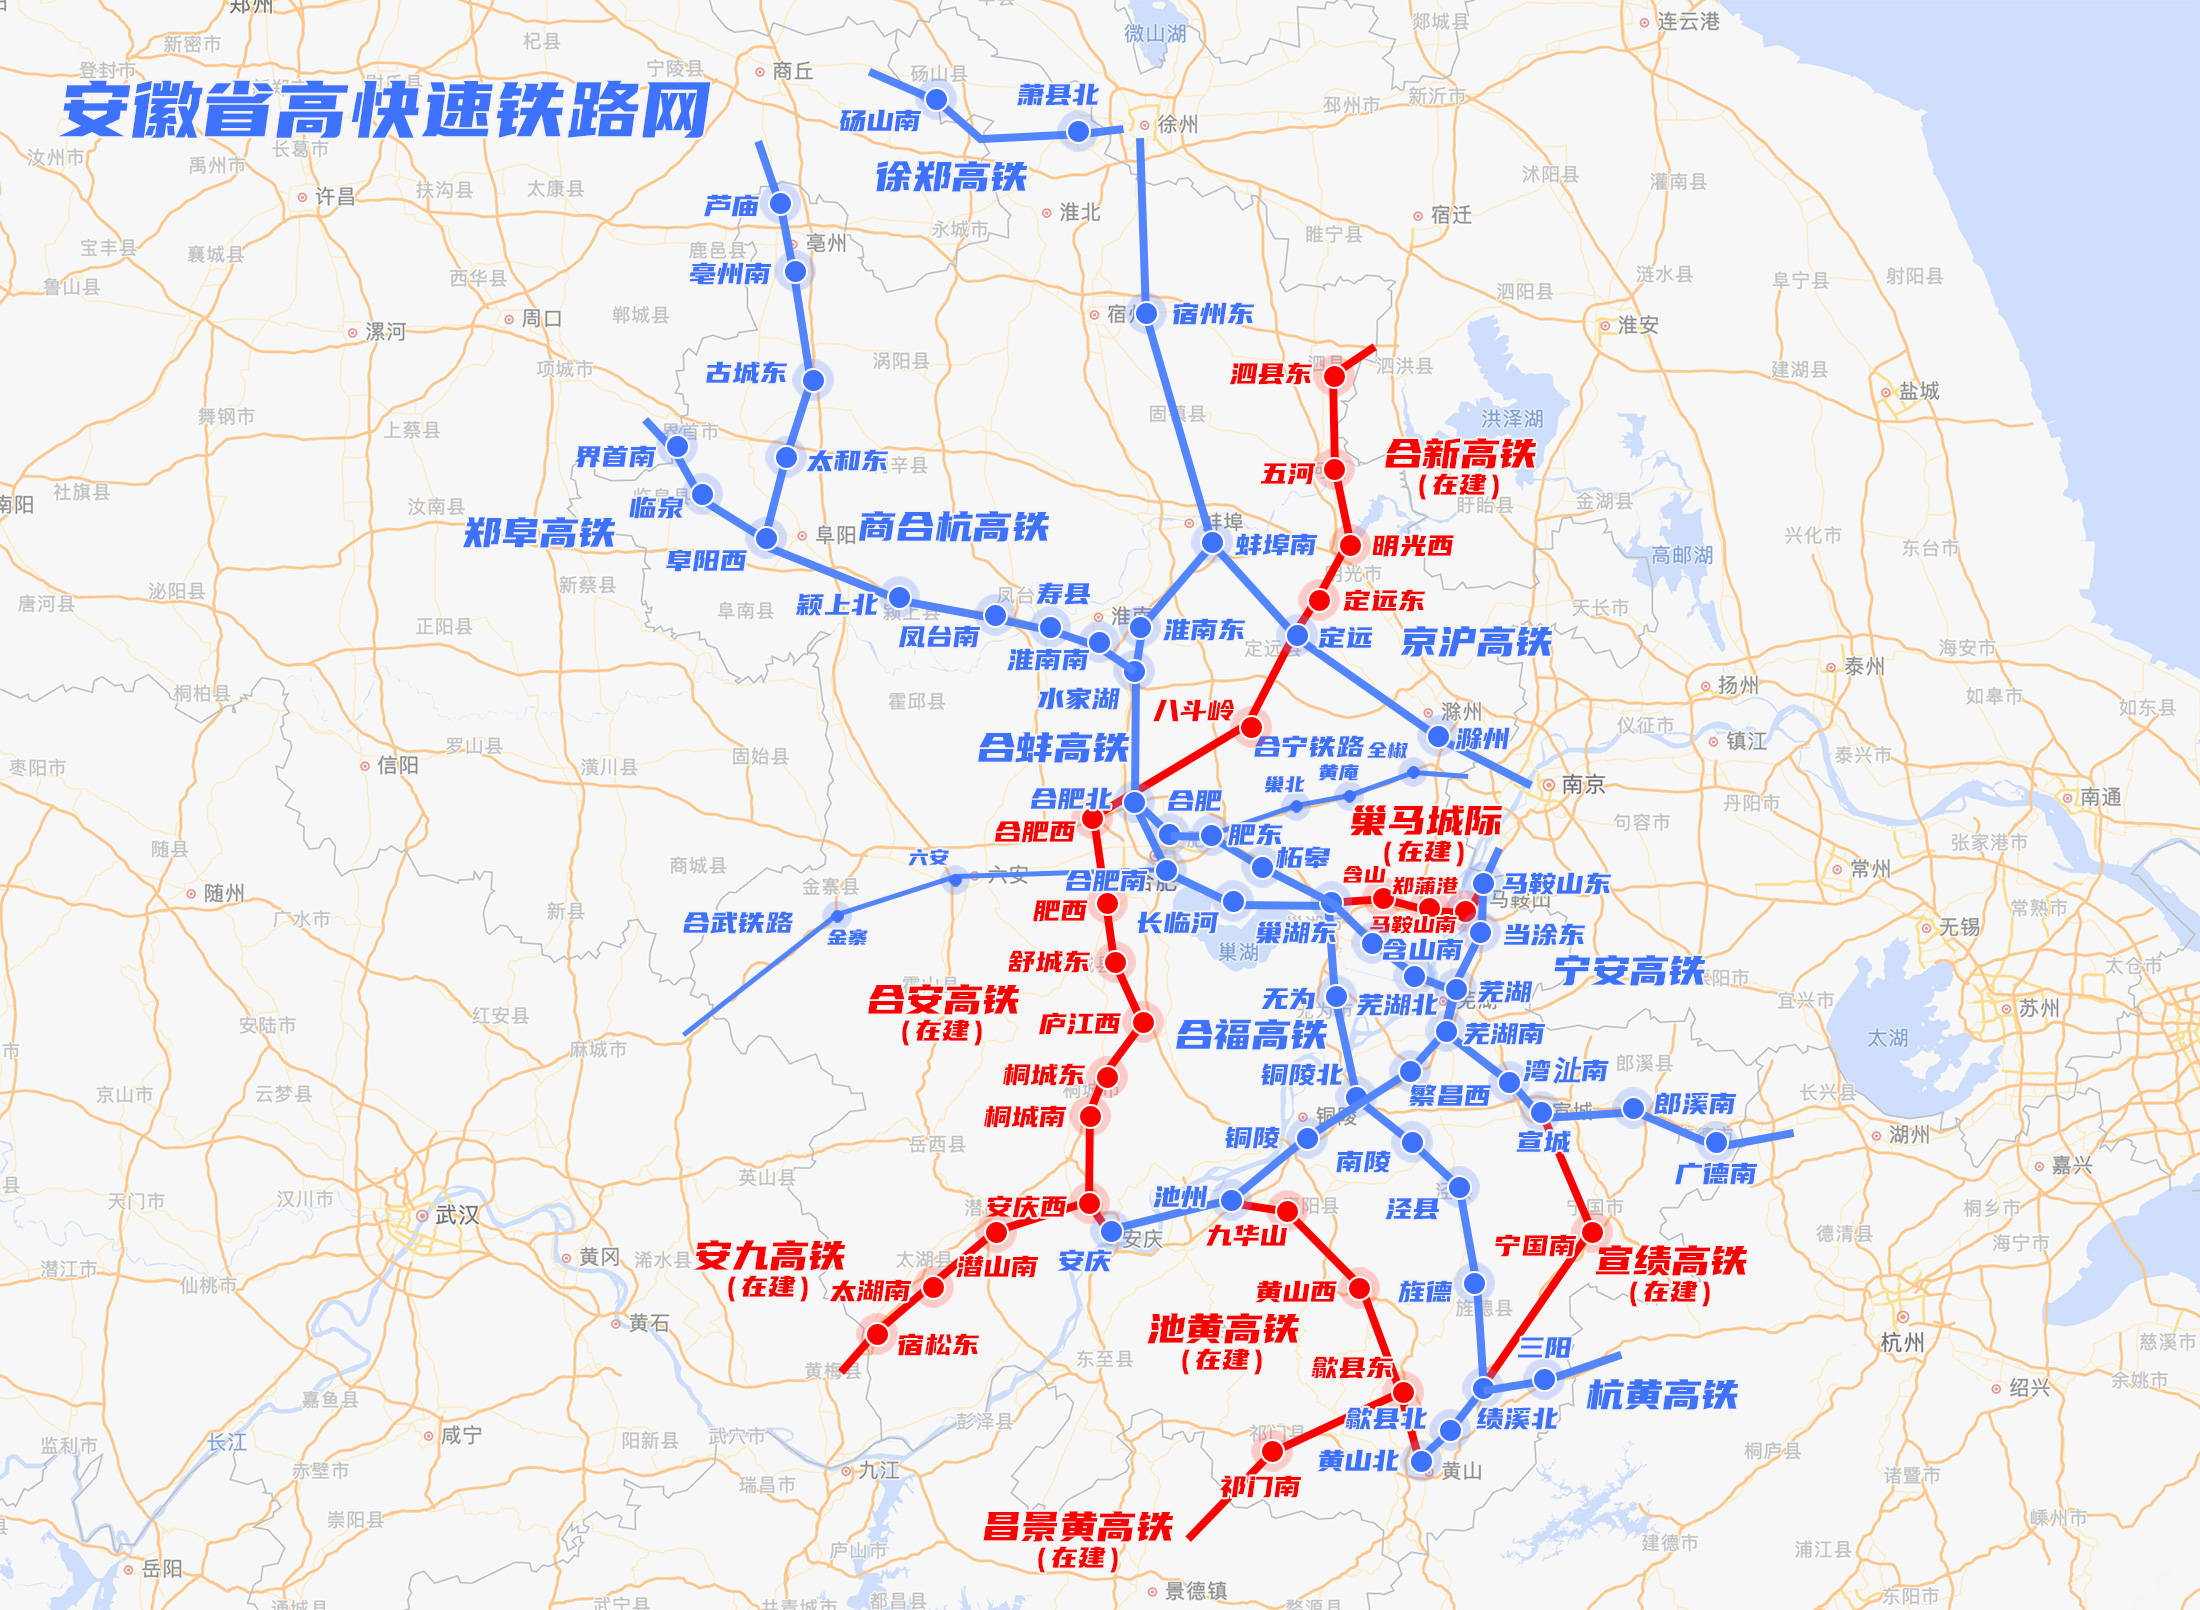 池黄高速铁路,昌景黄高速铁路,宣绩高速铁路,巢马城际铁路等16条线路